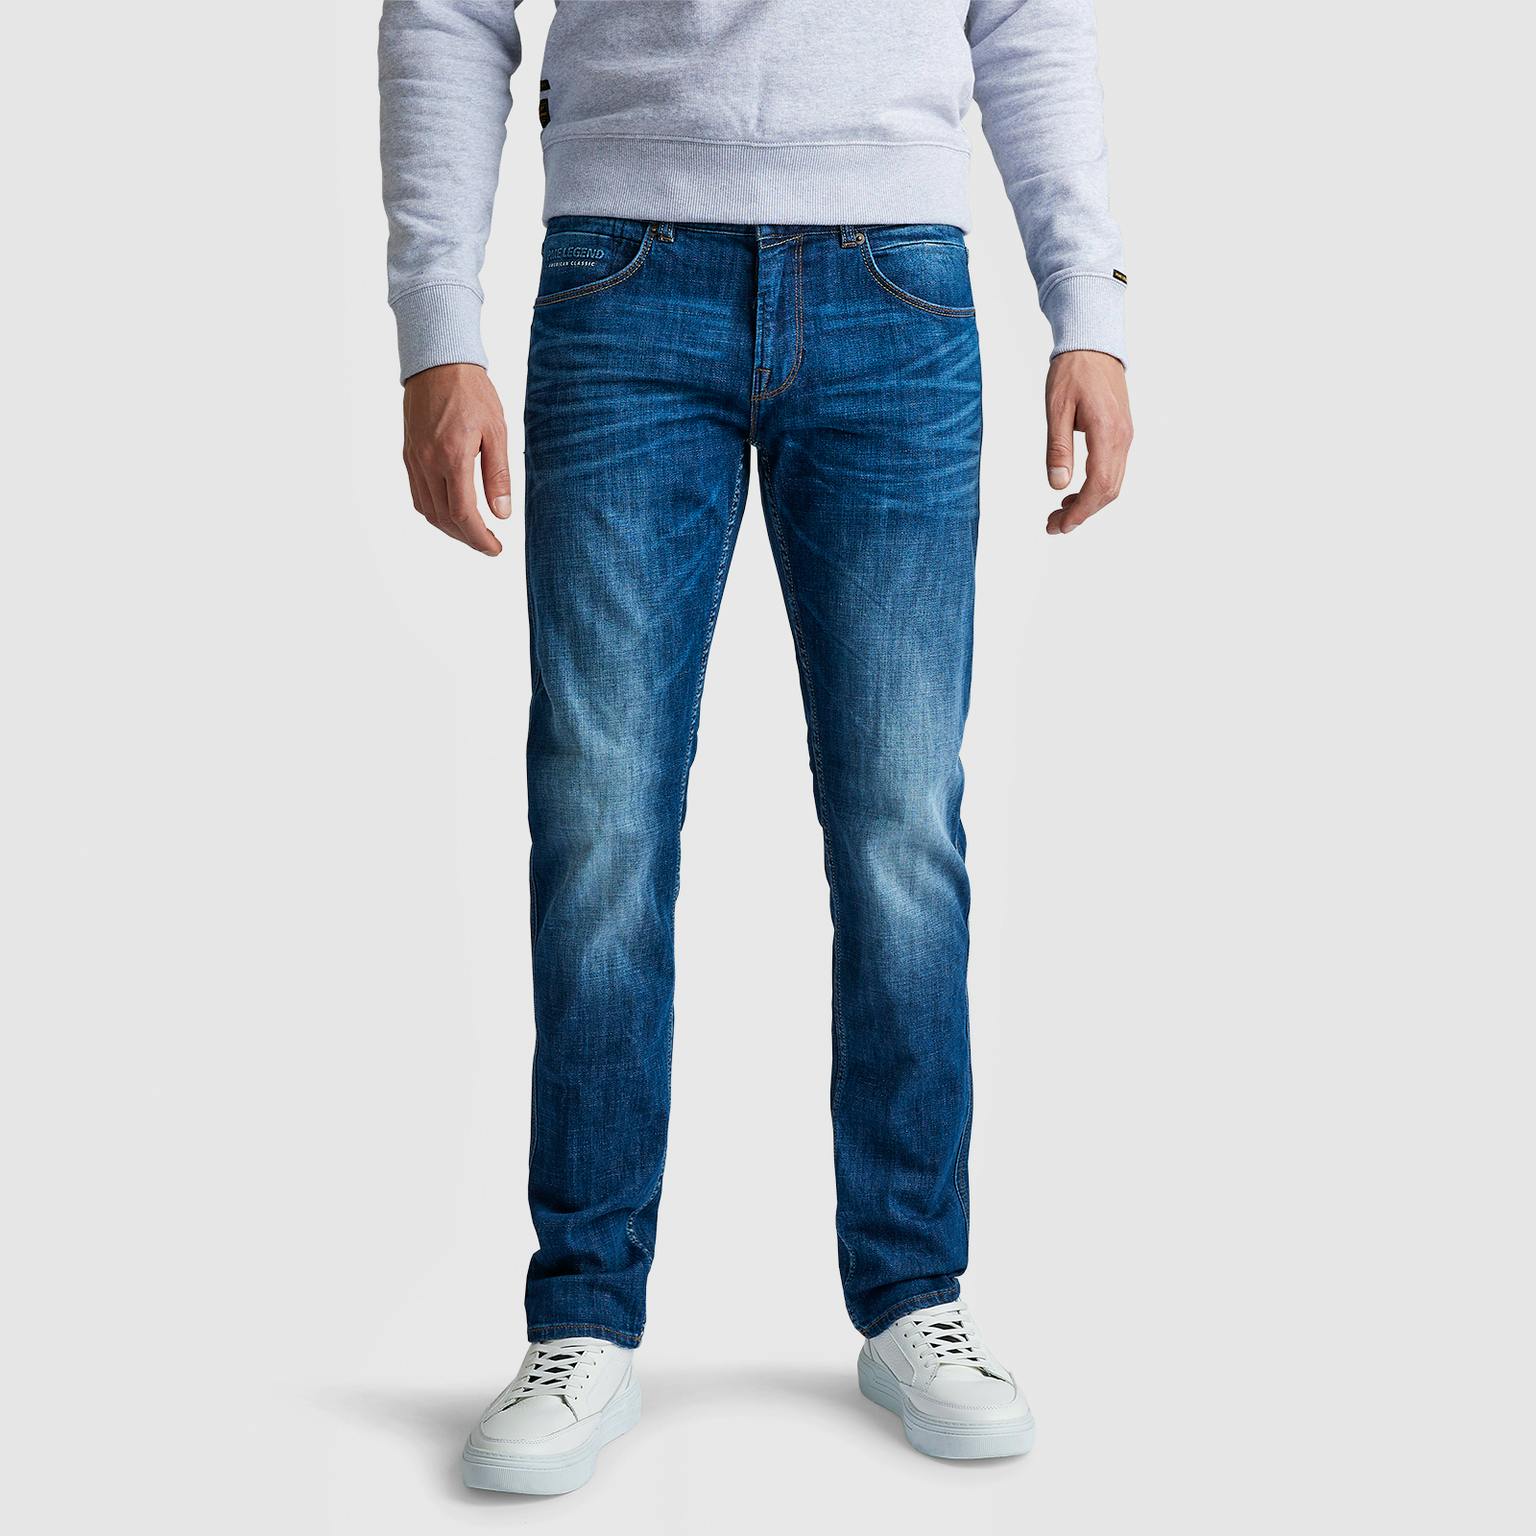 PME LEGEND Jeans Regular Fit NIGHTFLIGHT Slub Denim MVB